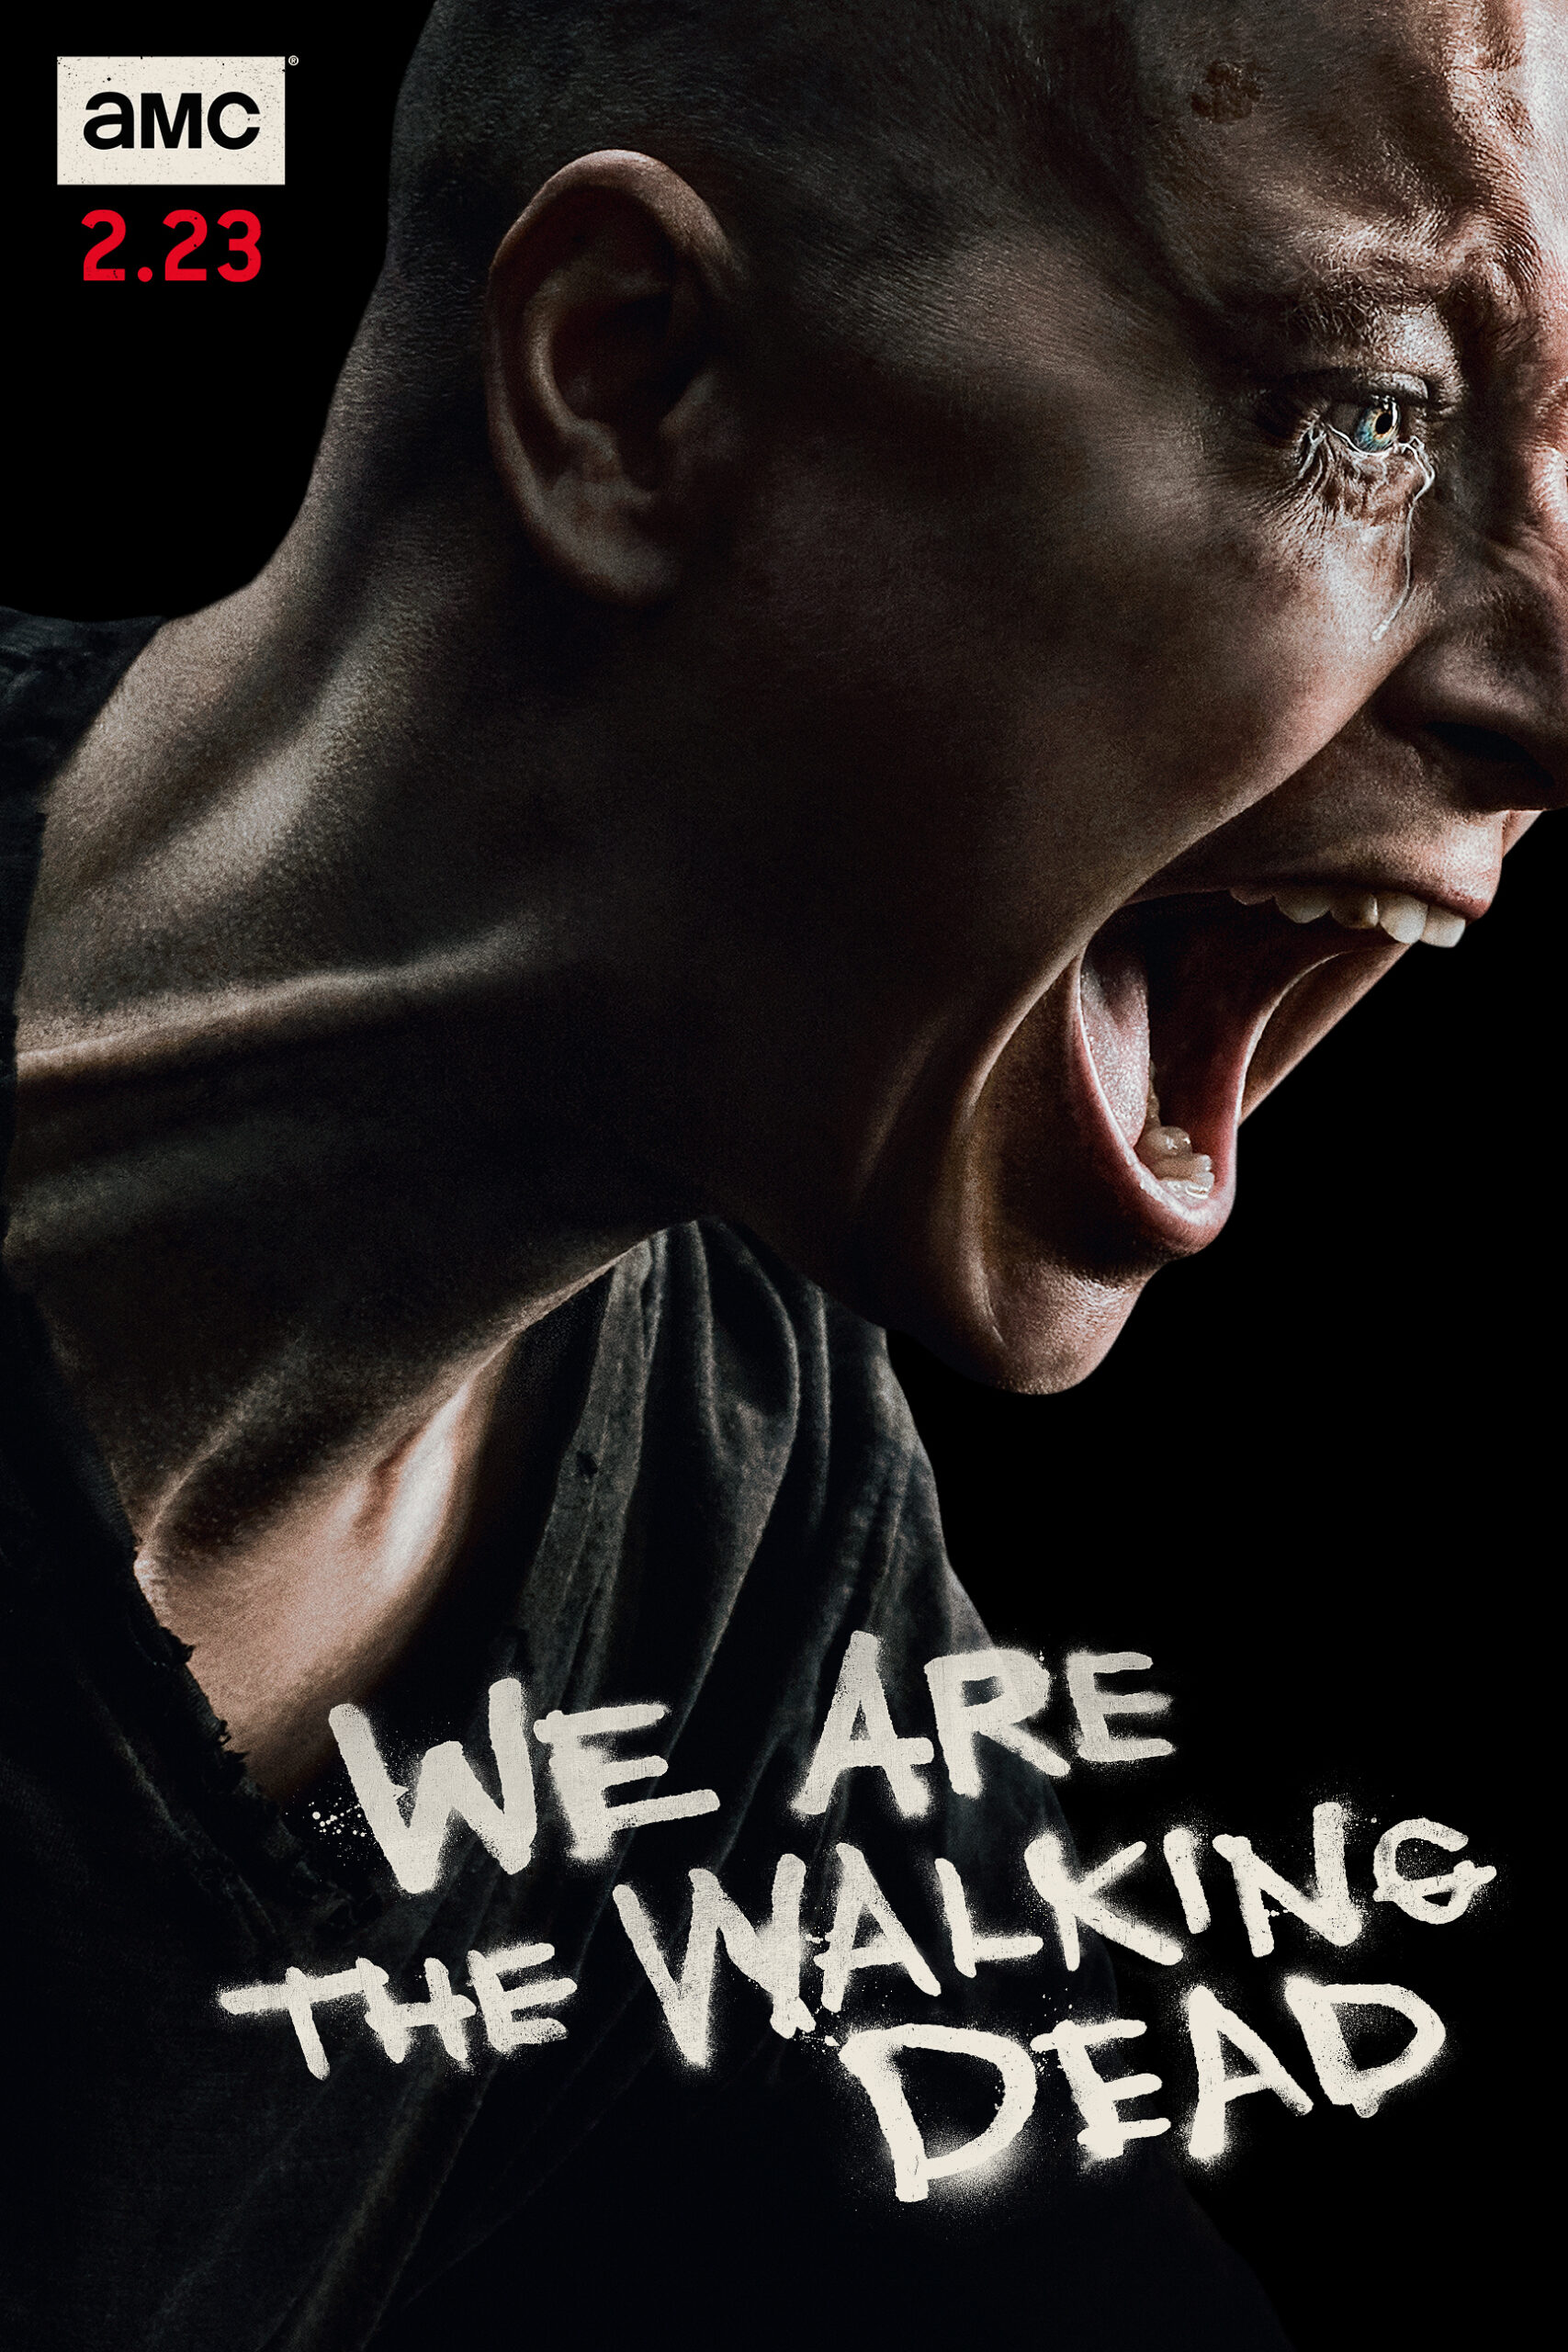 ดูหนังออนไลน์ฟรี The Walking Dead Season 4 EP6 เดอะวอล์กกิงเดด ปี4 ตอนที่6 [[Sub Thai]]